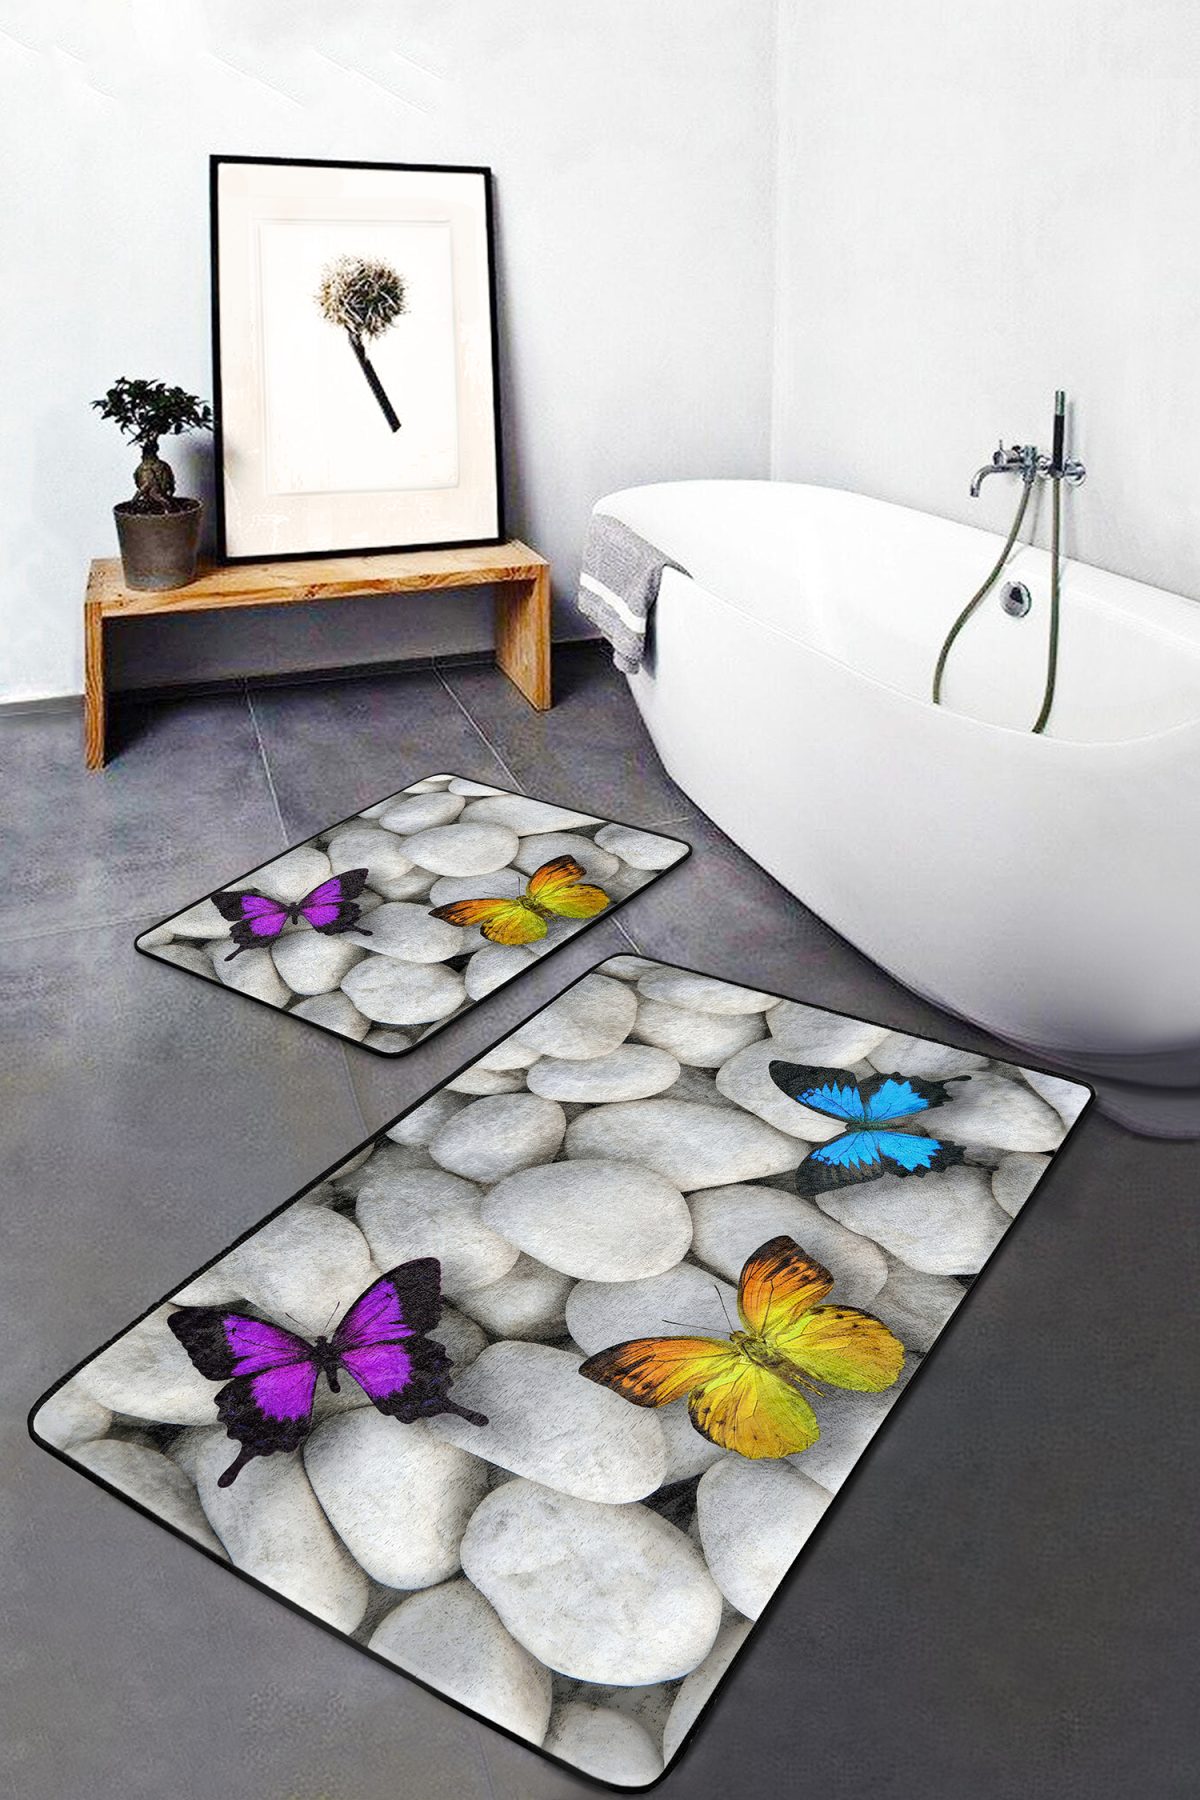 Taş Zemin Renkli Kelebek Tasarımlı 2'li Kaymaz Tabanlı Banyo & Mutfak Paspas Takımı Realhomes